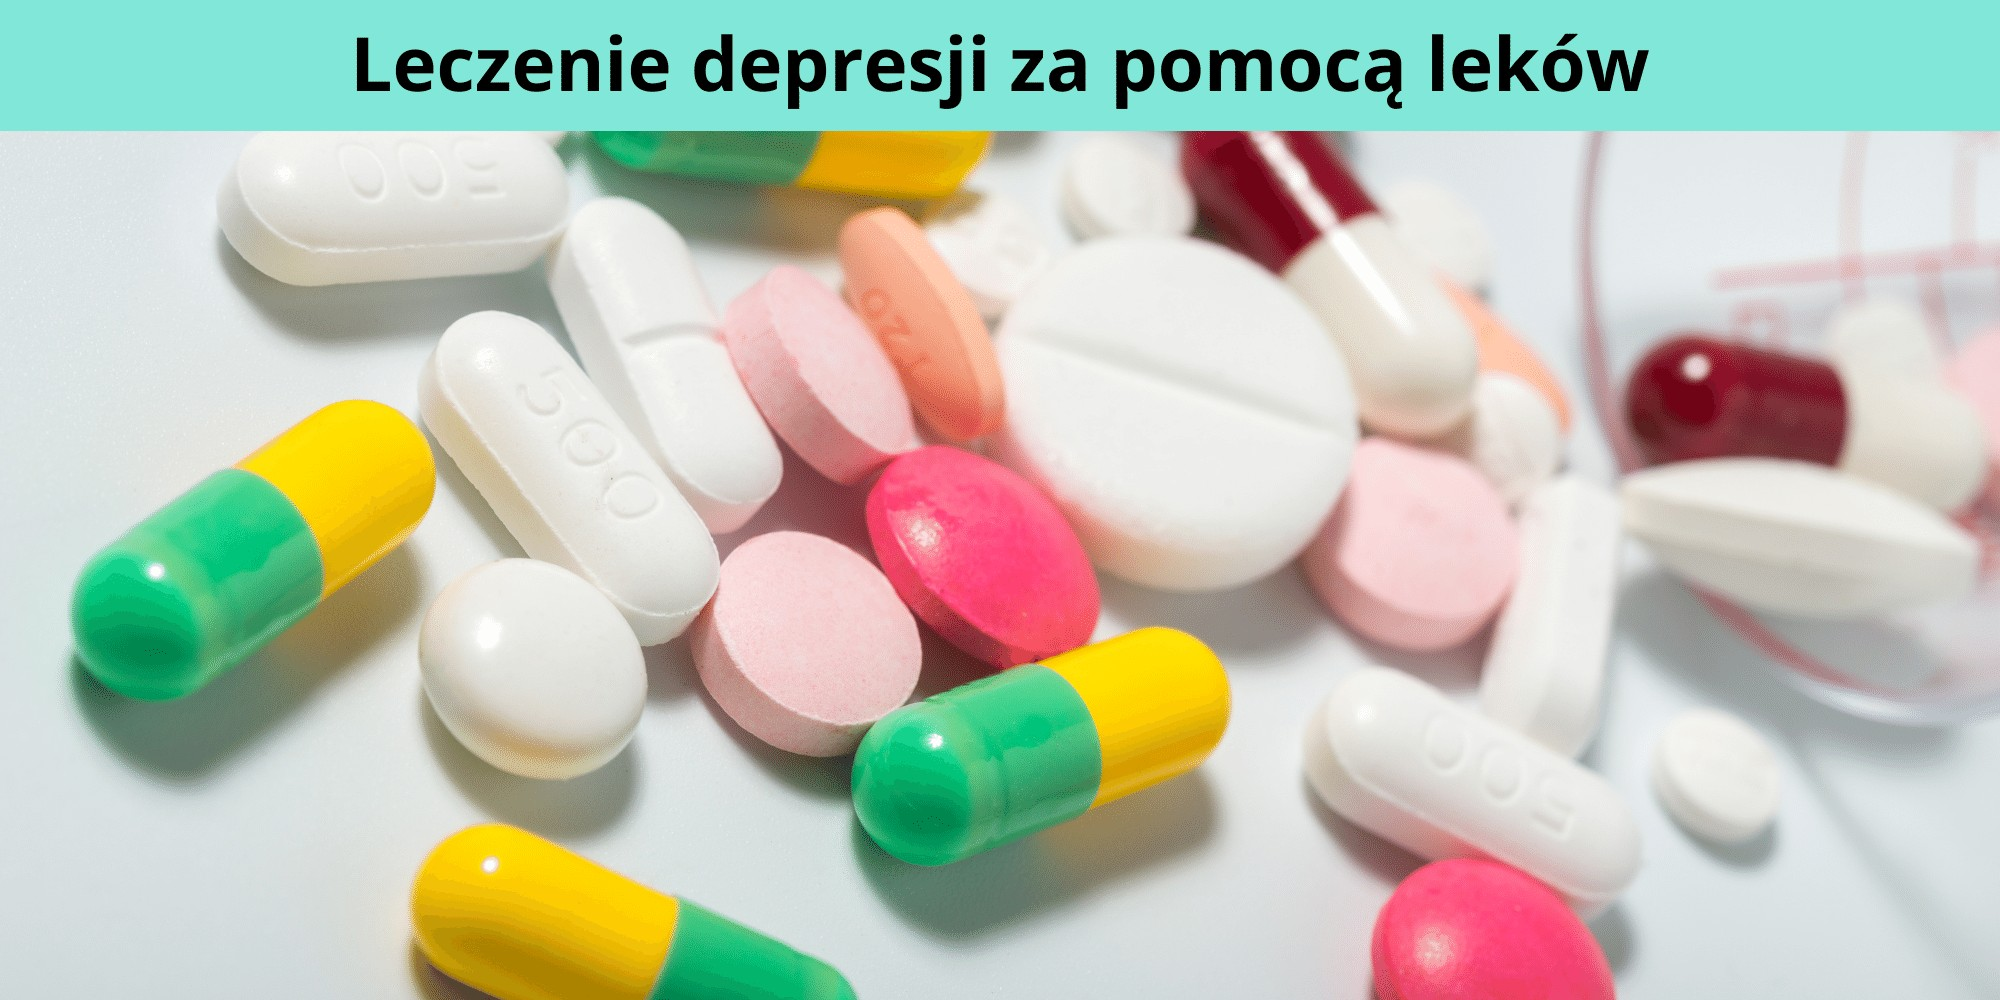  leczenie depresji za pomocą leków